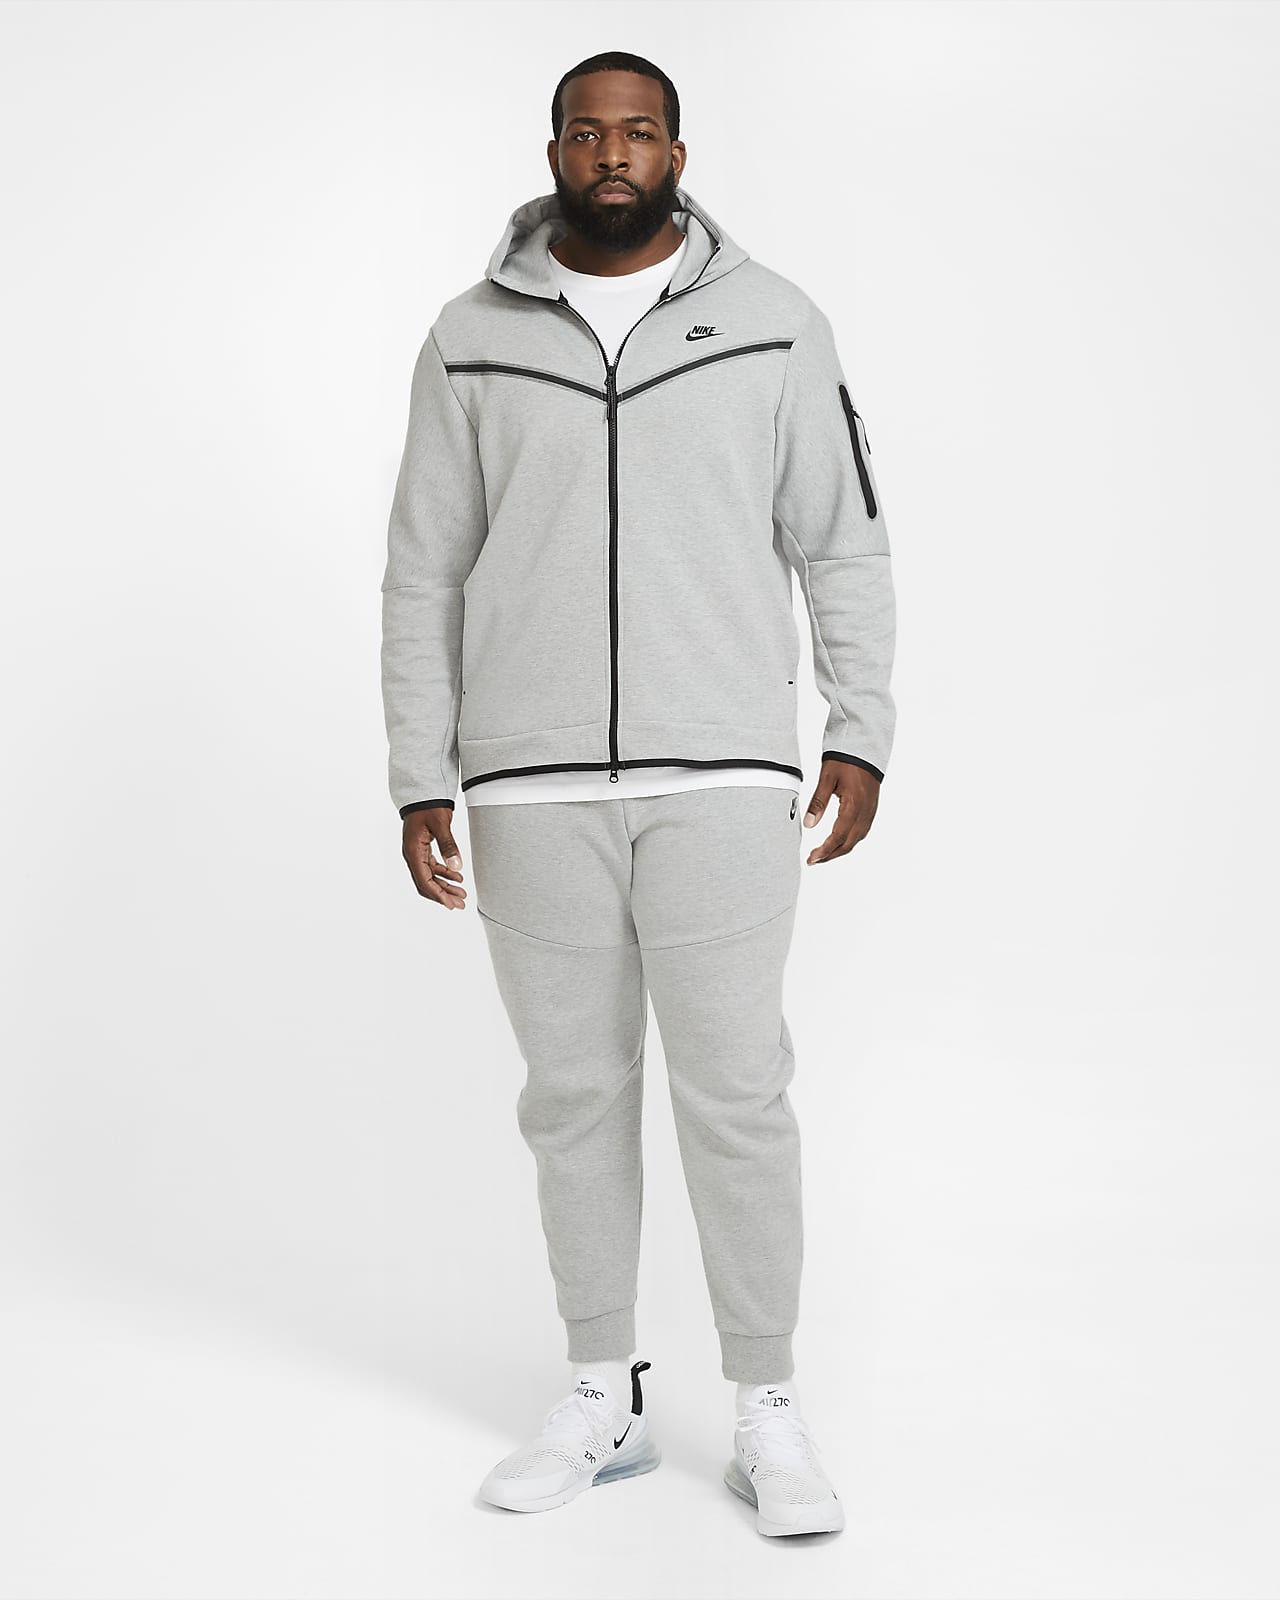 √100以上 nike tech fleece 295477-Nike tech fleece jacket